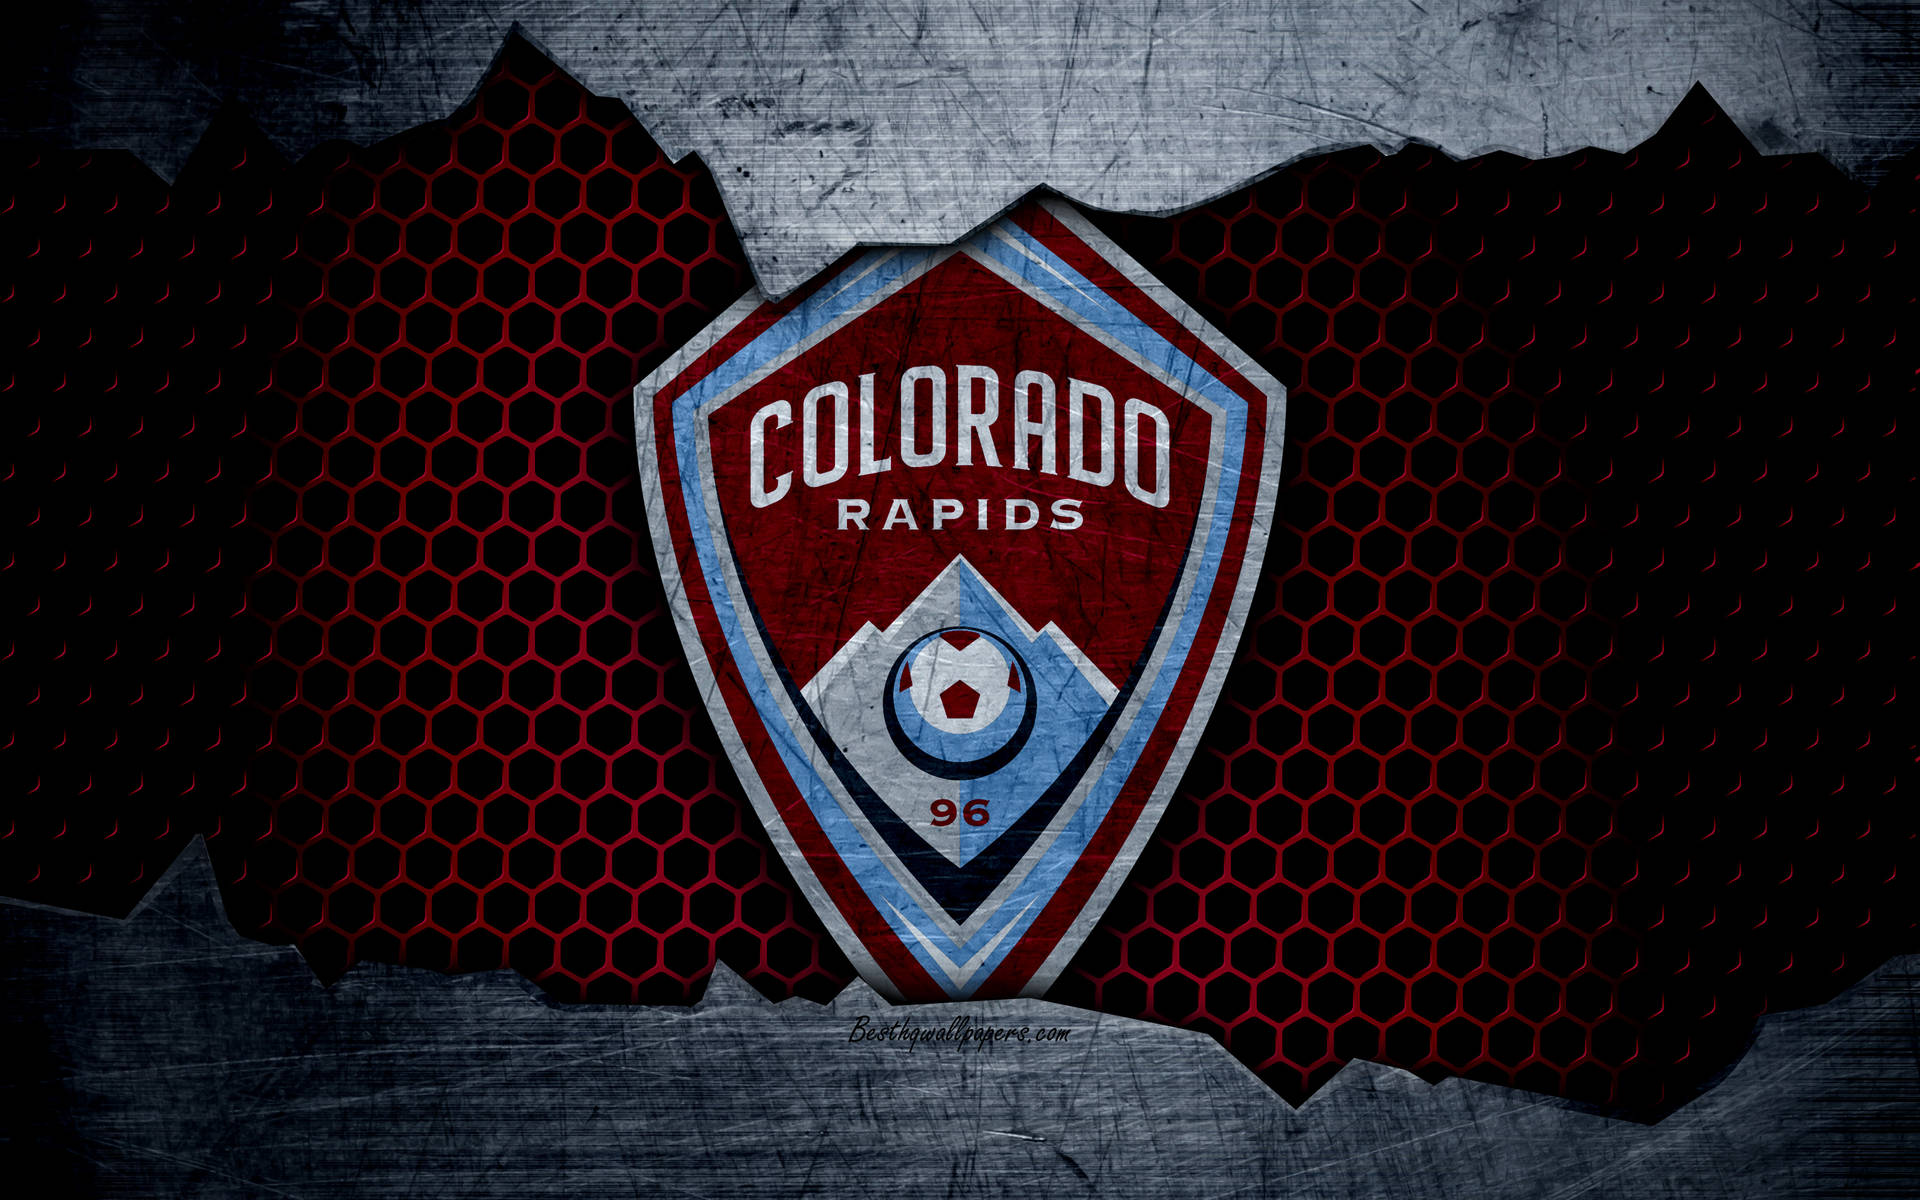 Coloradorapids Teaser-logo Wallpaper